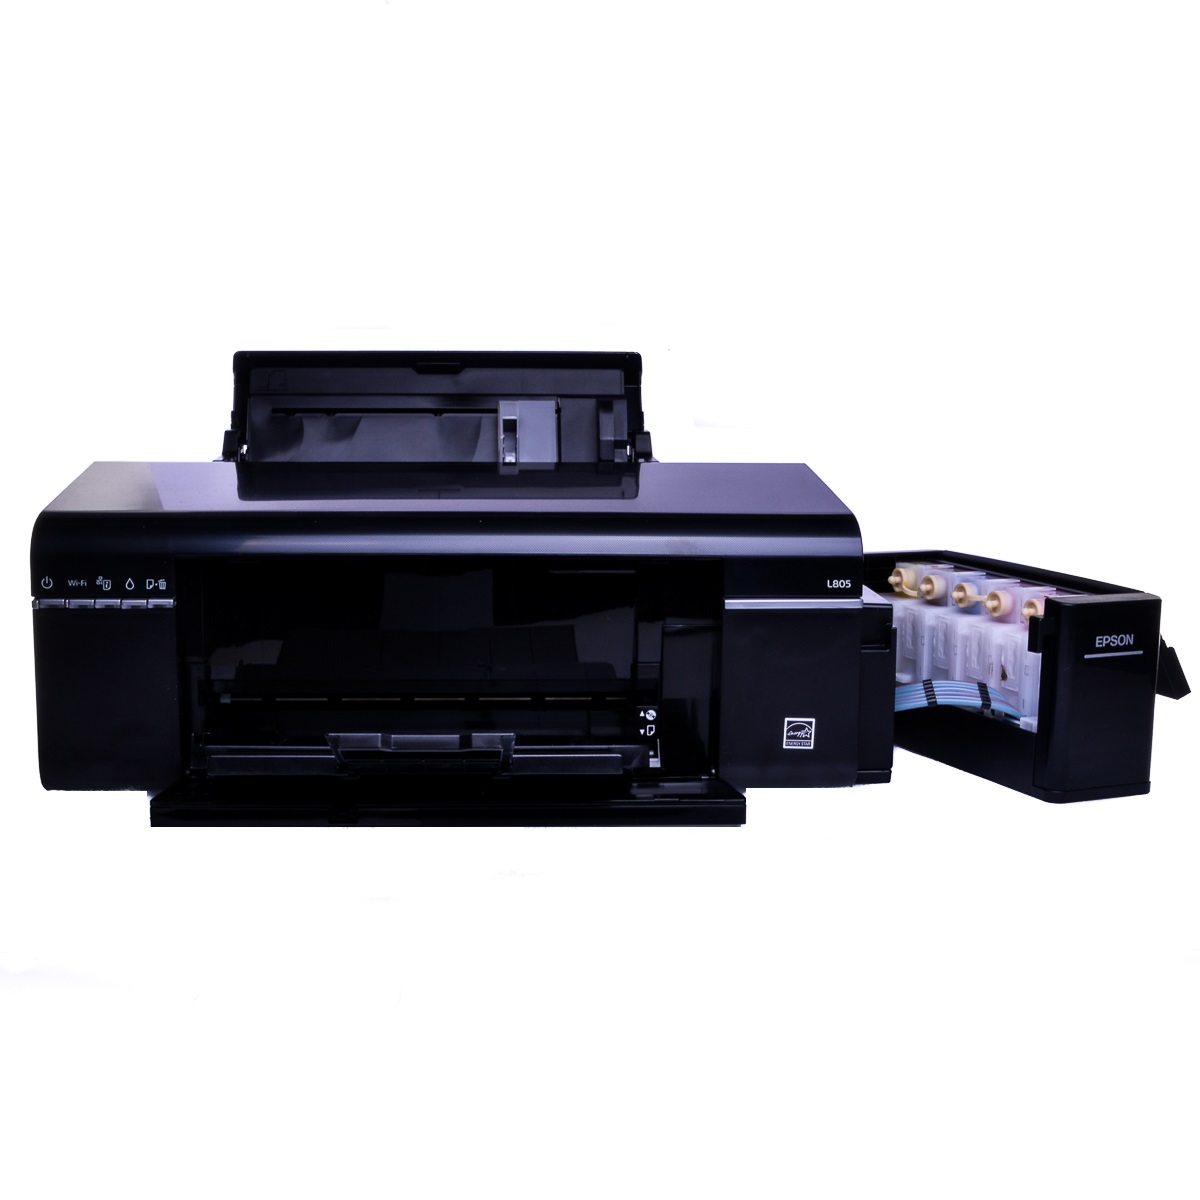 Sublimation Printer Bundle Epson Ecotank L805 From City Ink Express A4 Sublimation Printer Bundles 3498